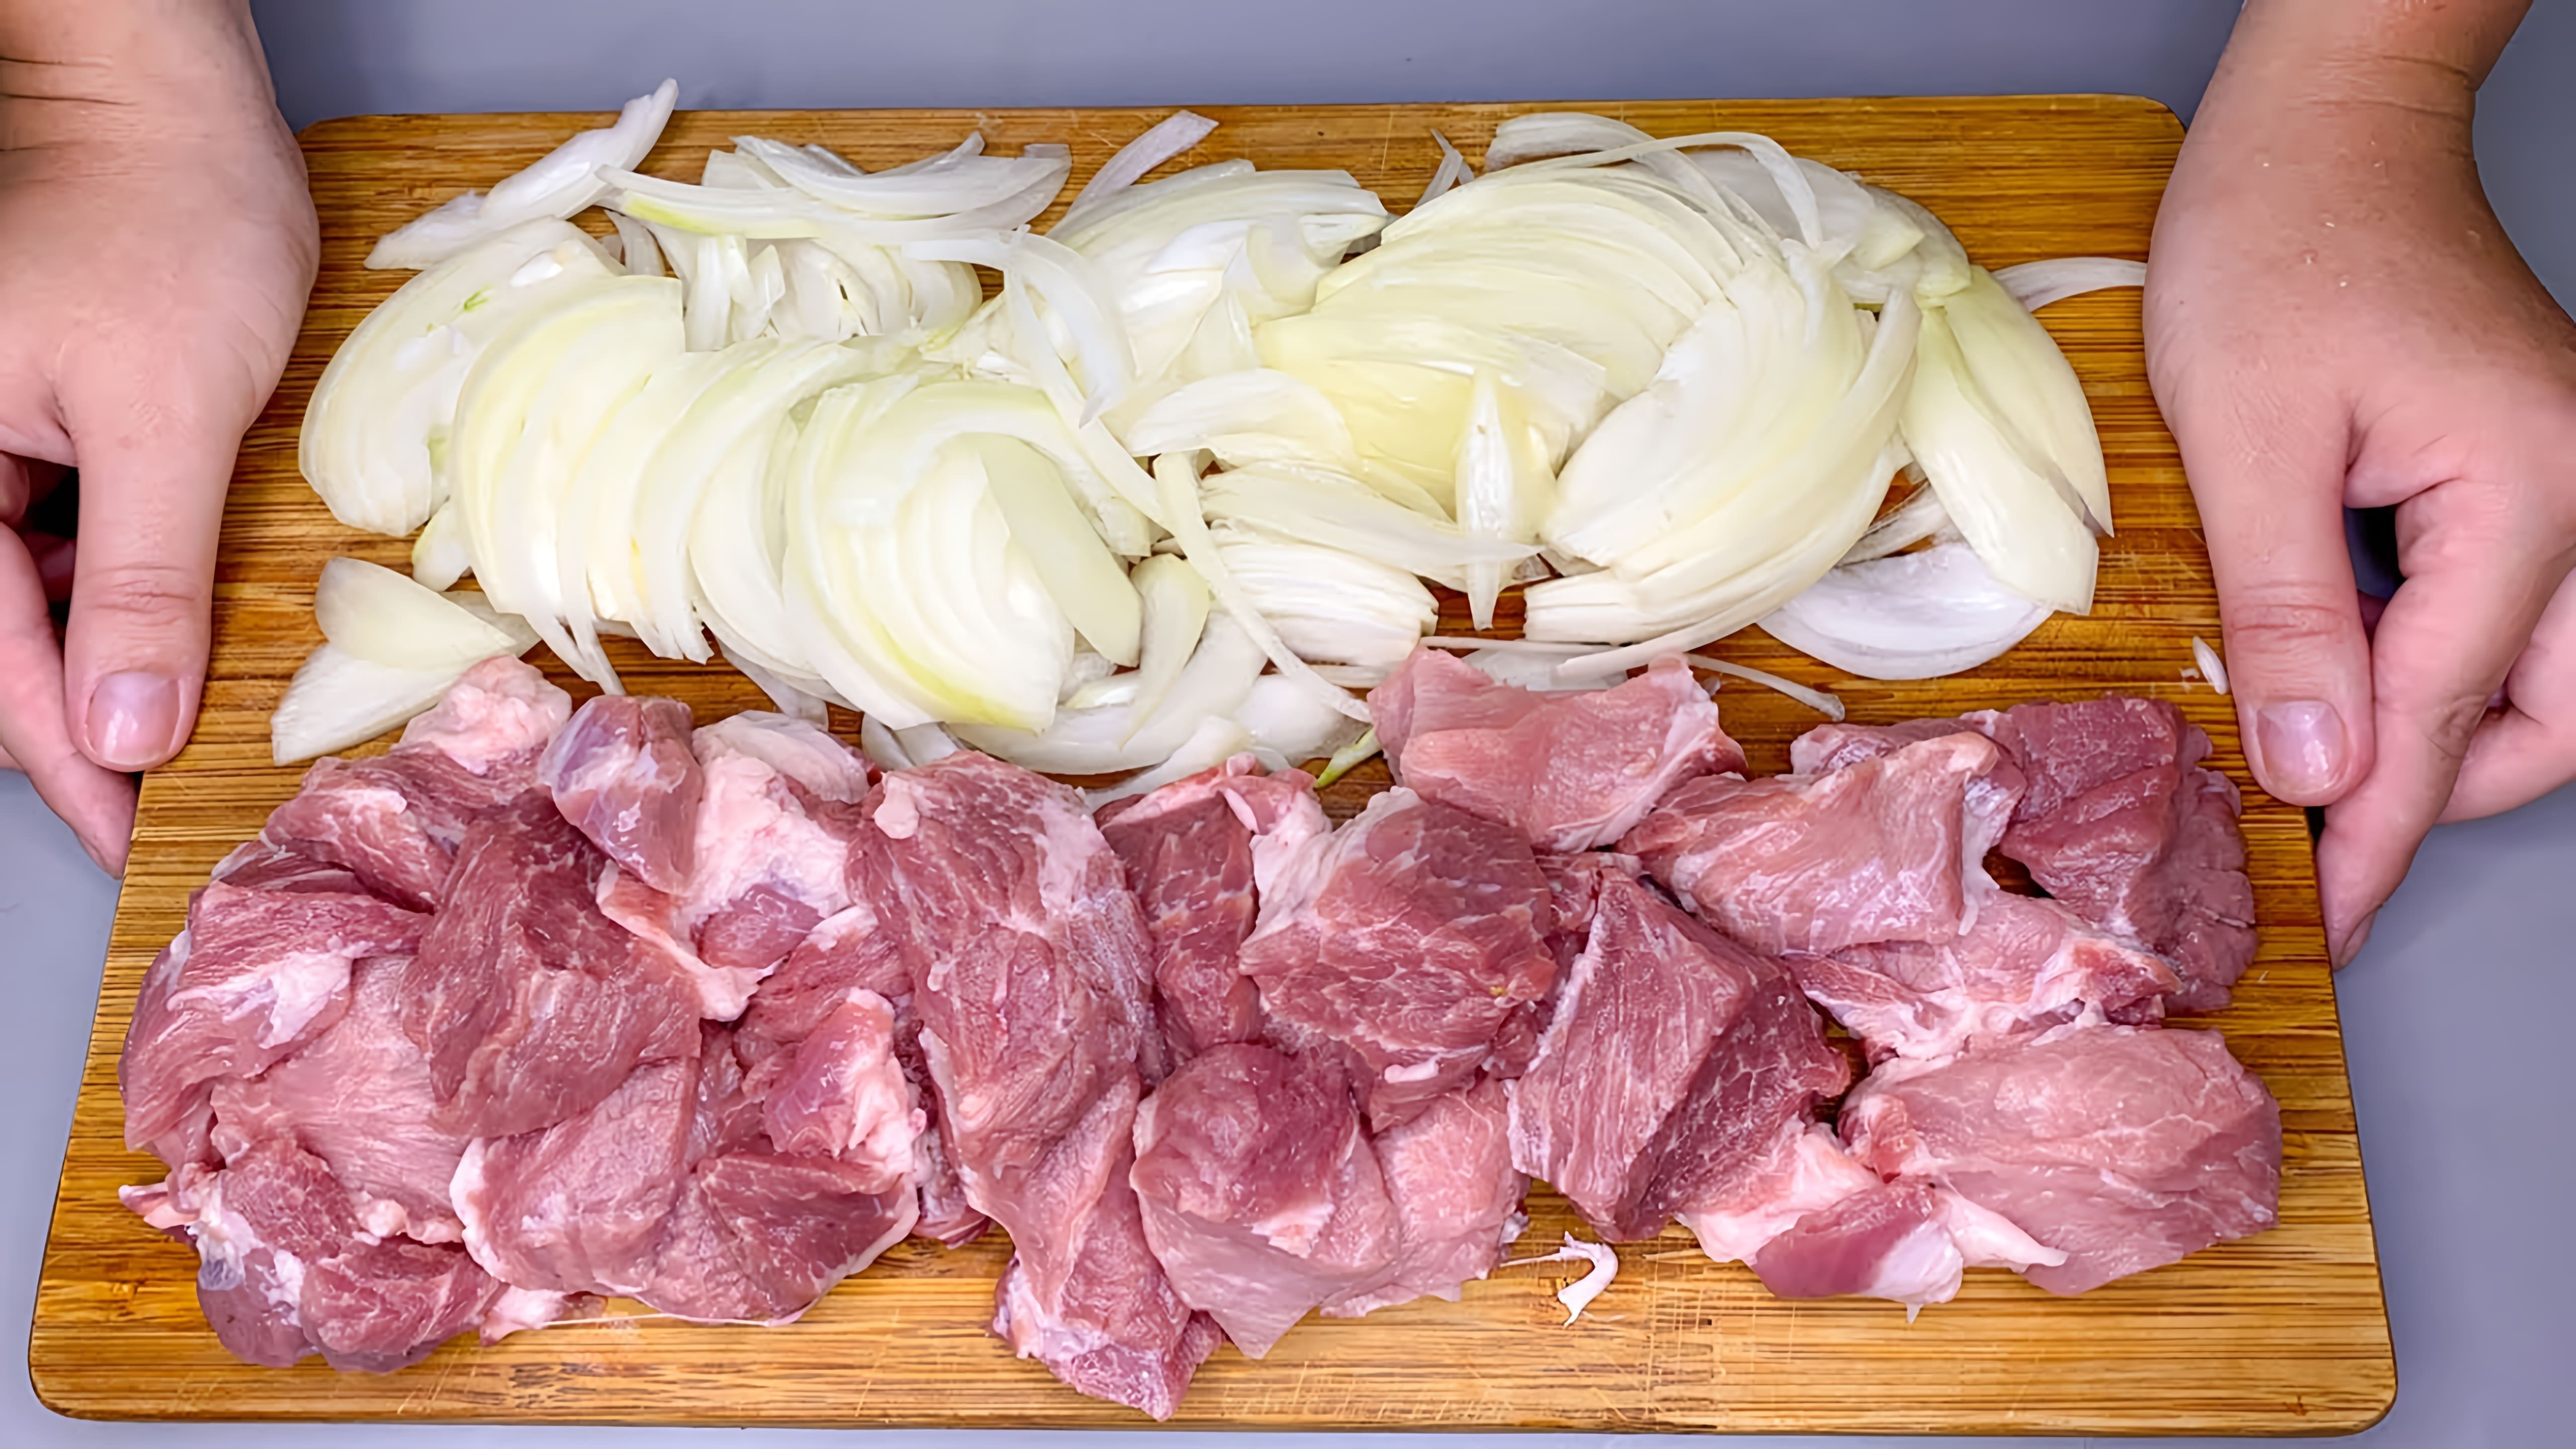 Видео посвящено приготовлению мяса таким образом, чтобы оно было невероятно вкусным и мягким